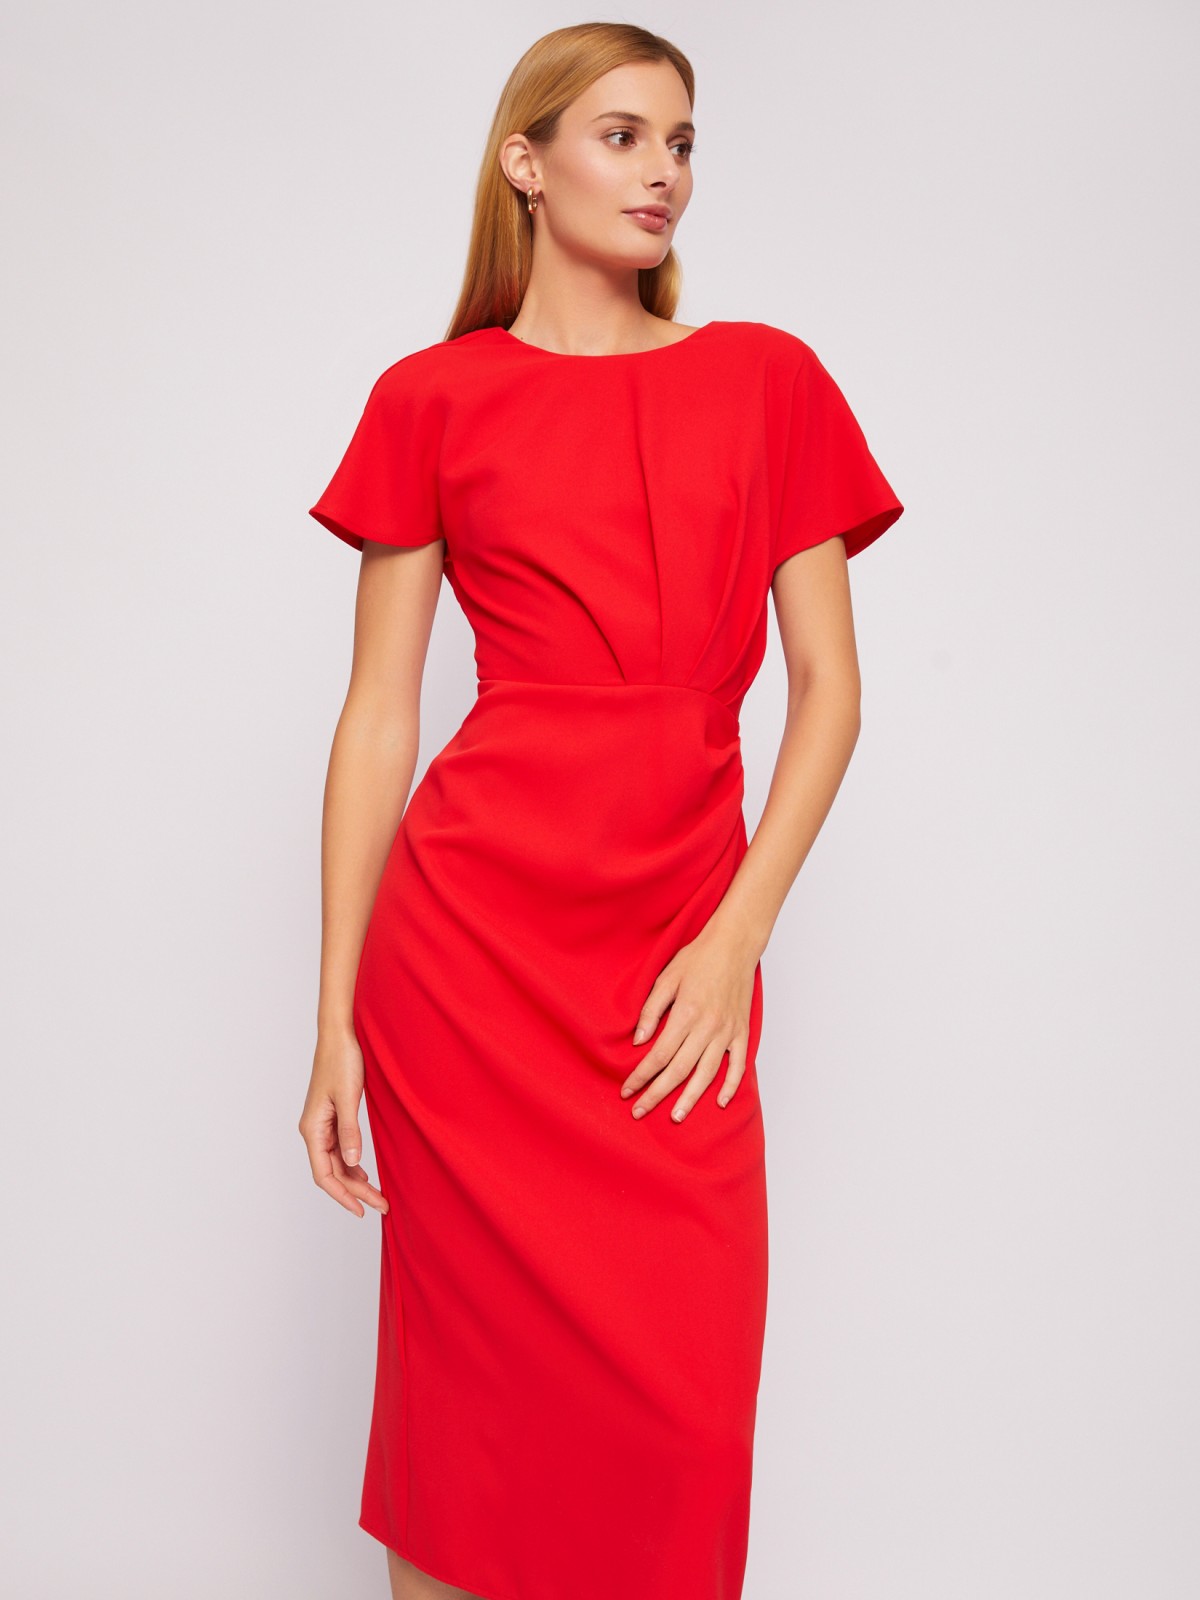 Платье длины миди с драпировкой и вырезом на спине zolla 024218239311, цвет красный, размер XS - фото 5